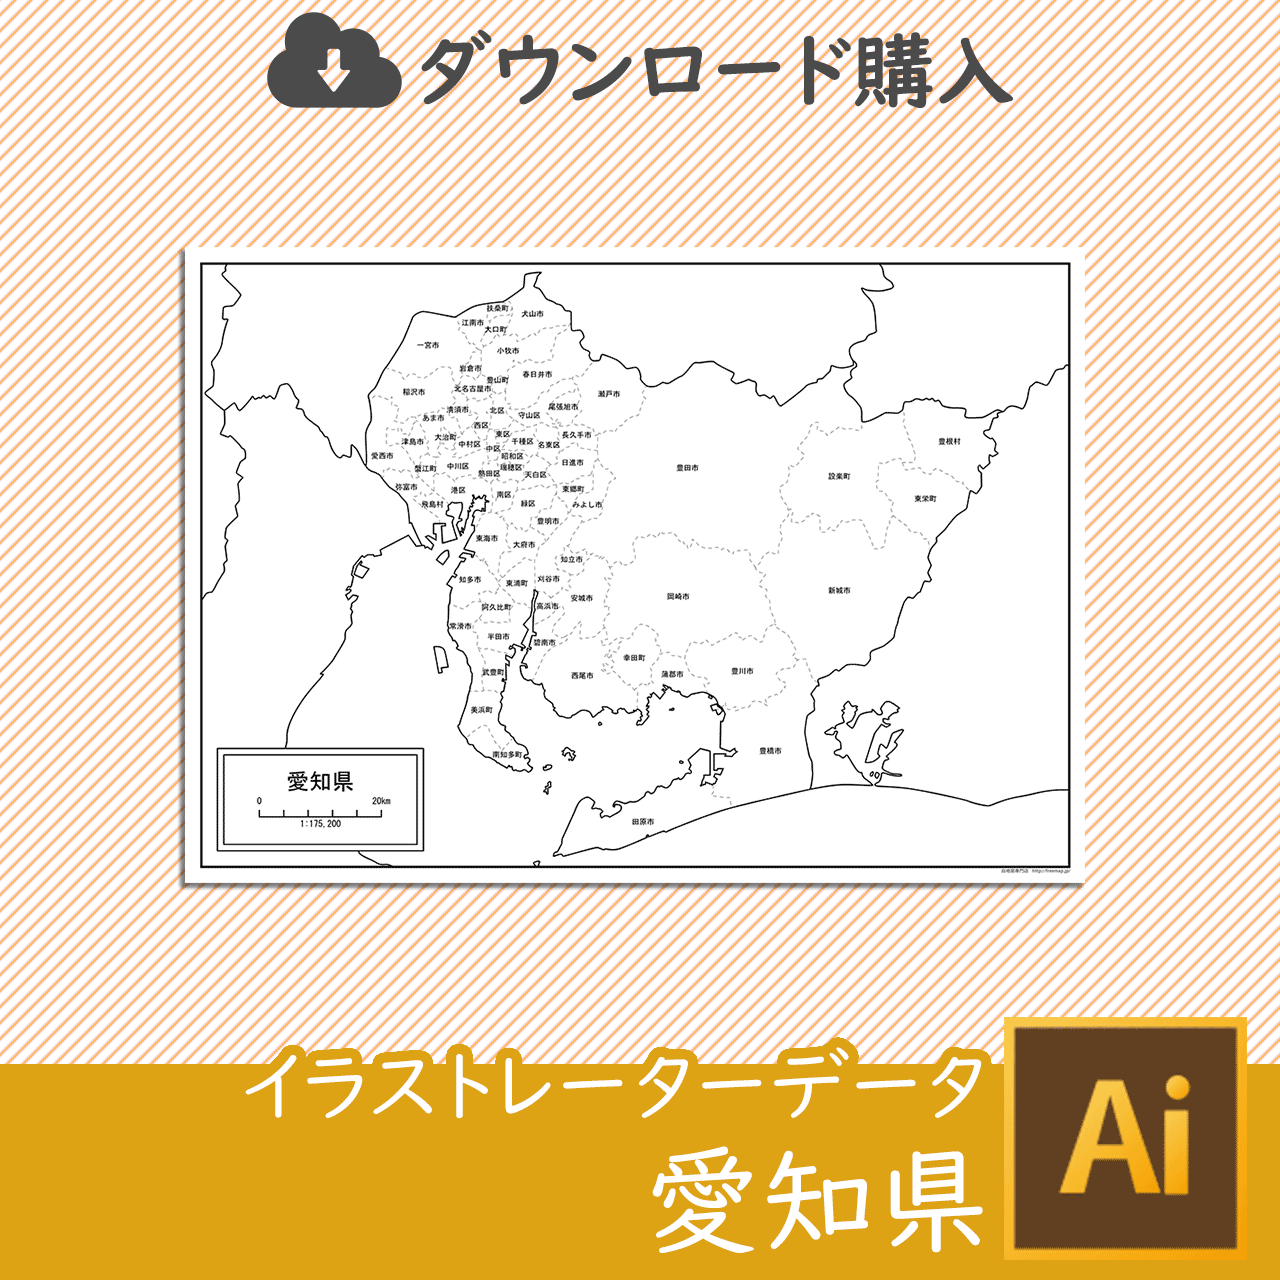 愛知県の白地図データのサムネイル画像